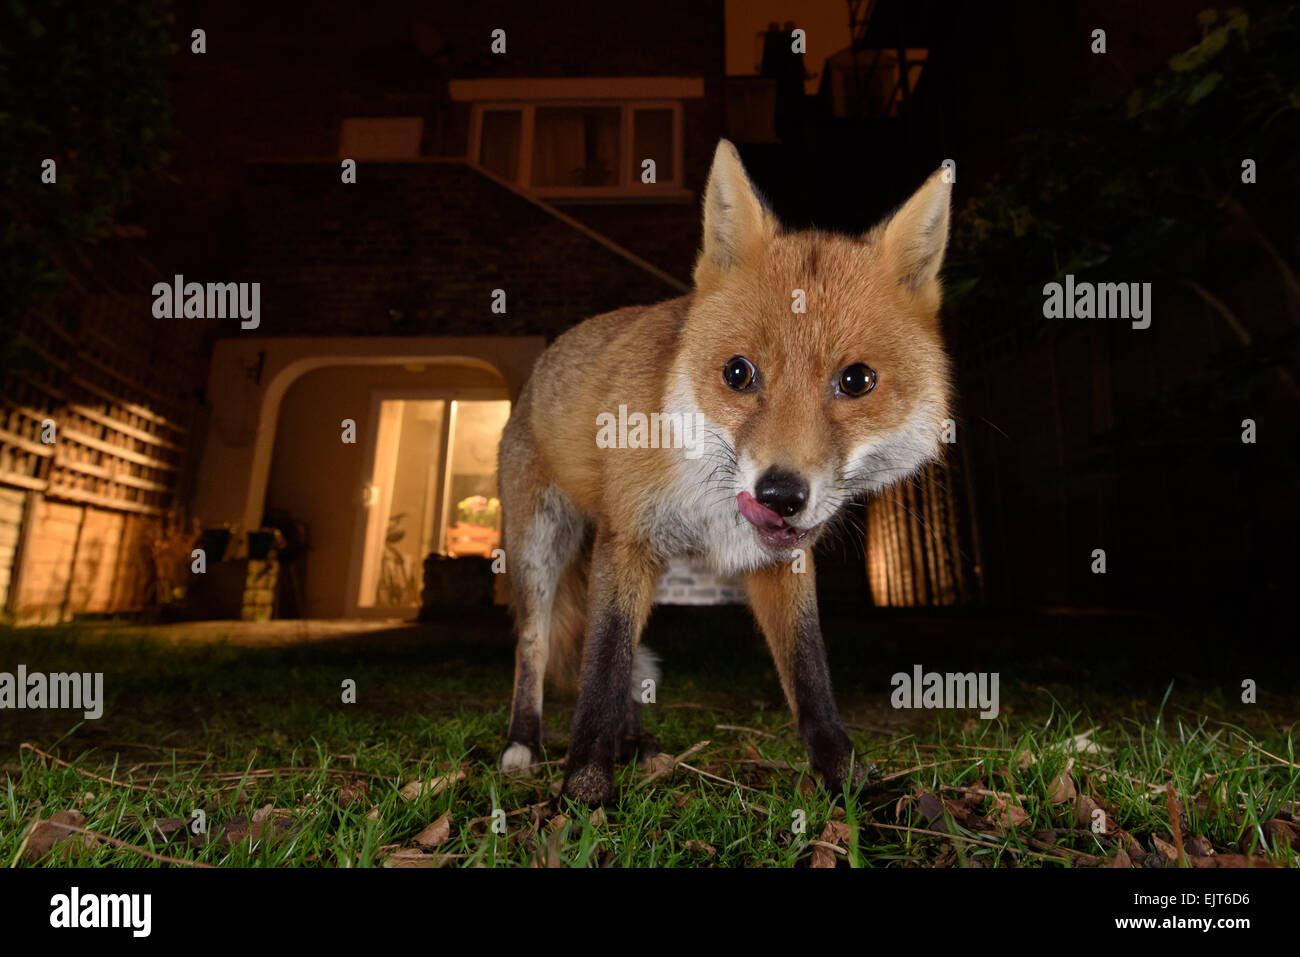 Fox urbaine de lécher les lèvres dans un jardin du sud de Londres la nuit Banque D'Images